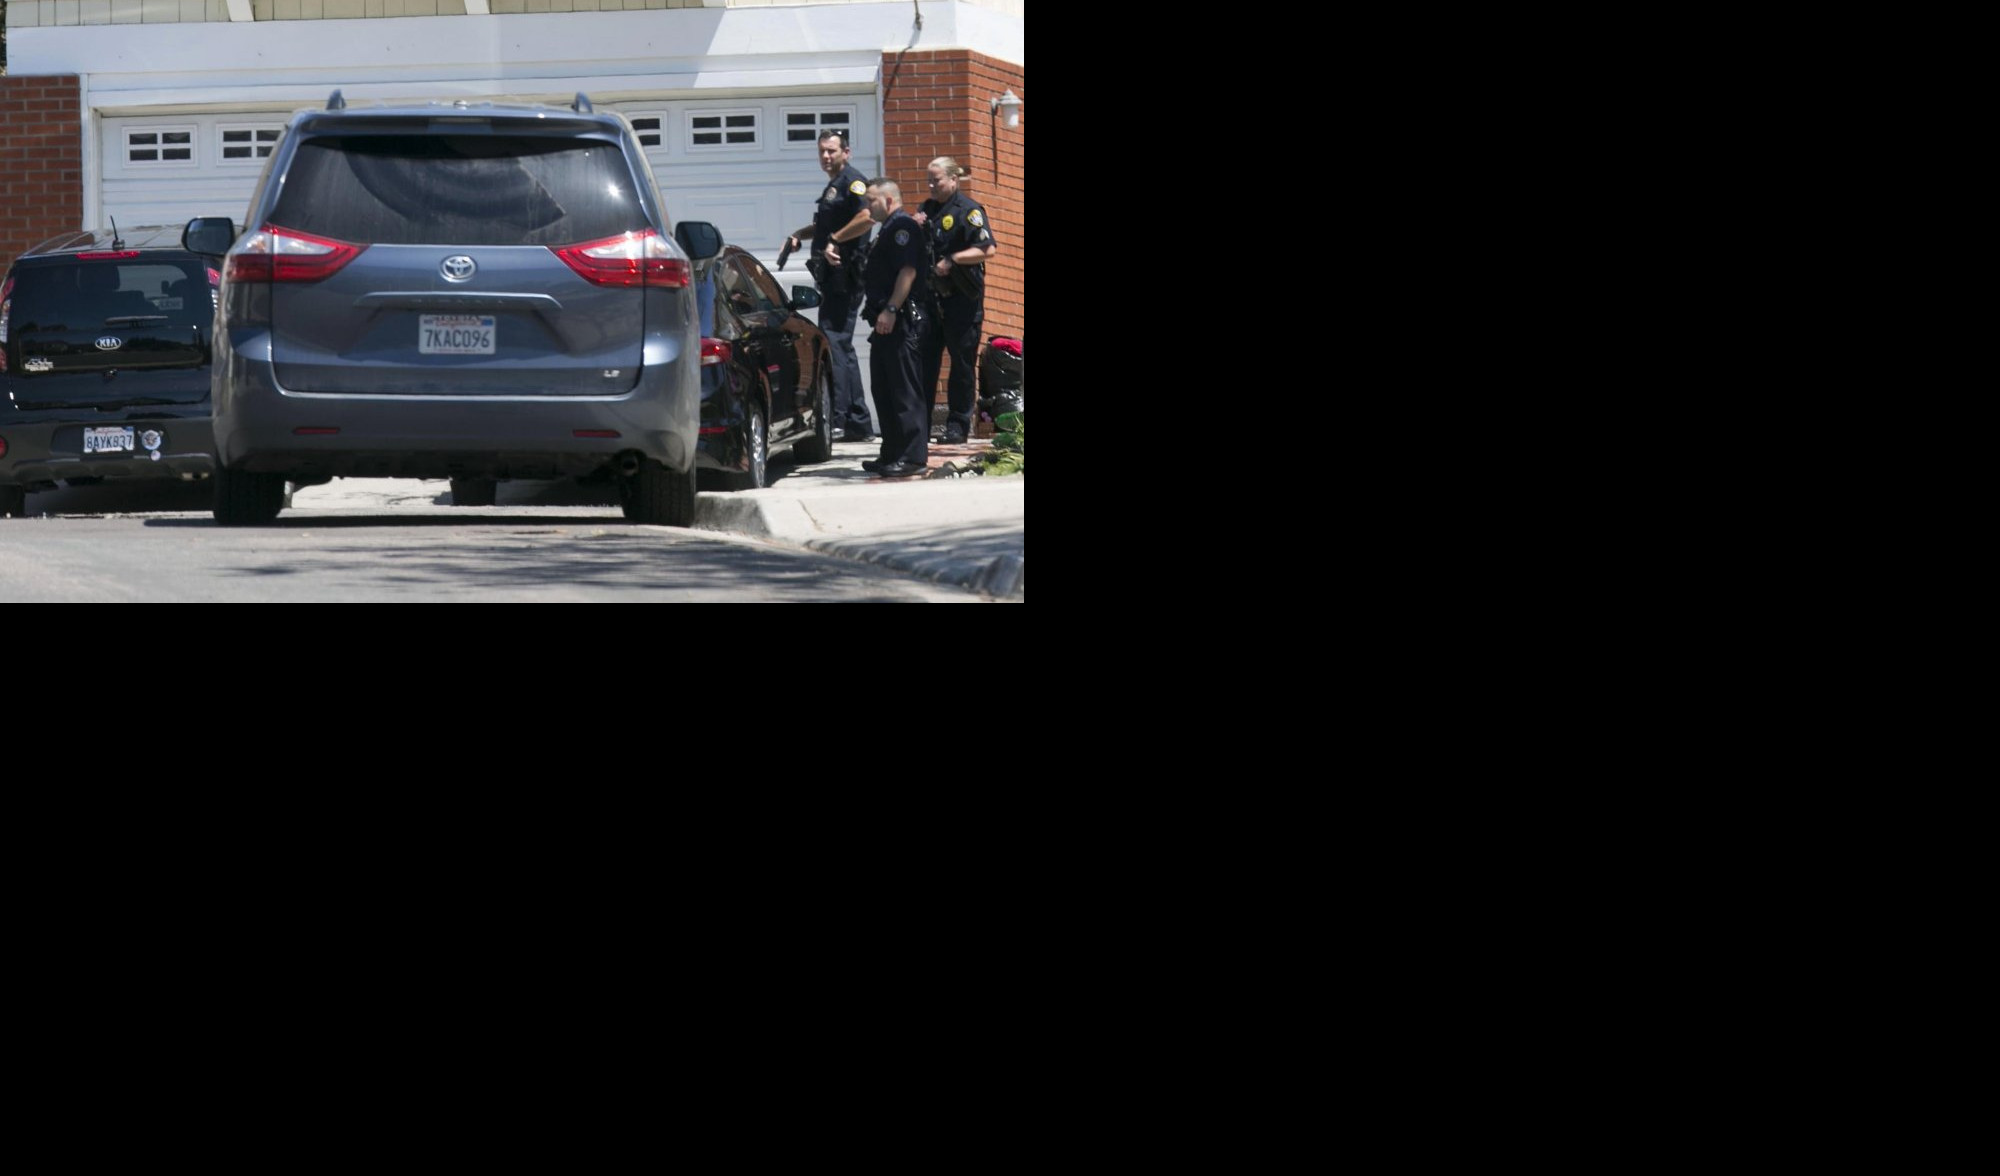 (FOTO) JEDNA OSOBA POGINULA, TRI RANJENE! Pucnjava u sinagogi u San Dijegu - napadač identifikovan i uhapšen!